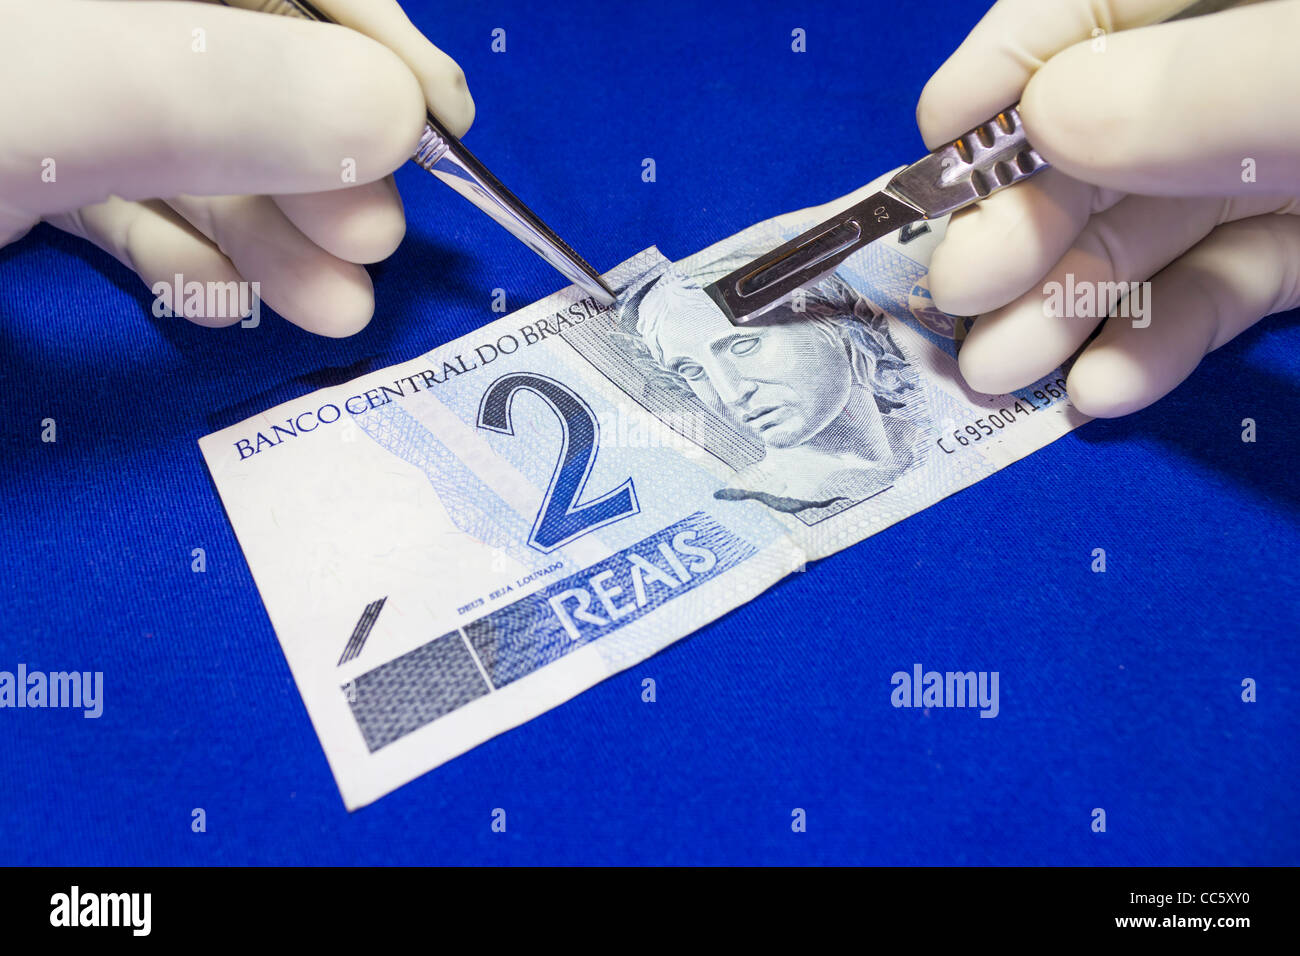 Cirugía - Dinero real brasileño. Un cirujano realiza una incisión quirúrgica en una nota con bisturí, pinzas y guantes estériles Foto de stock